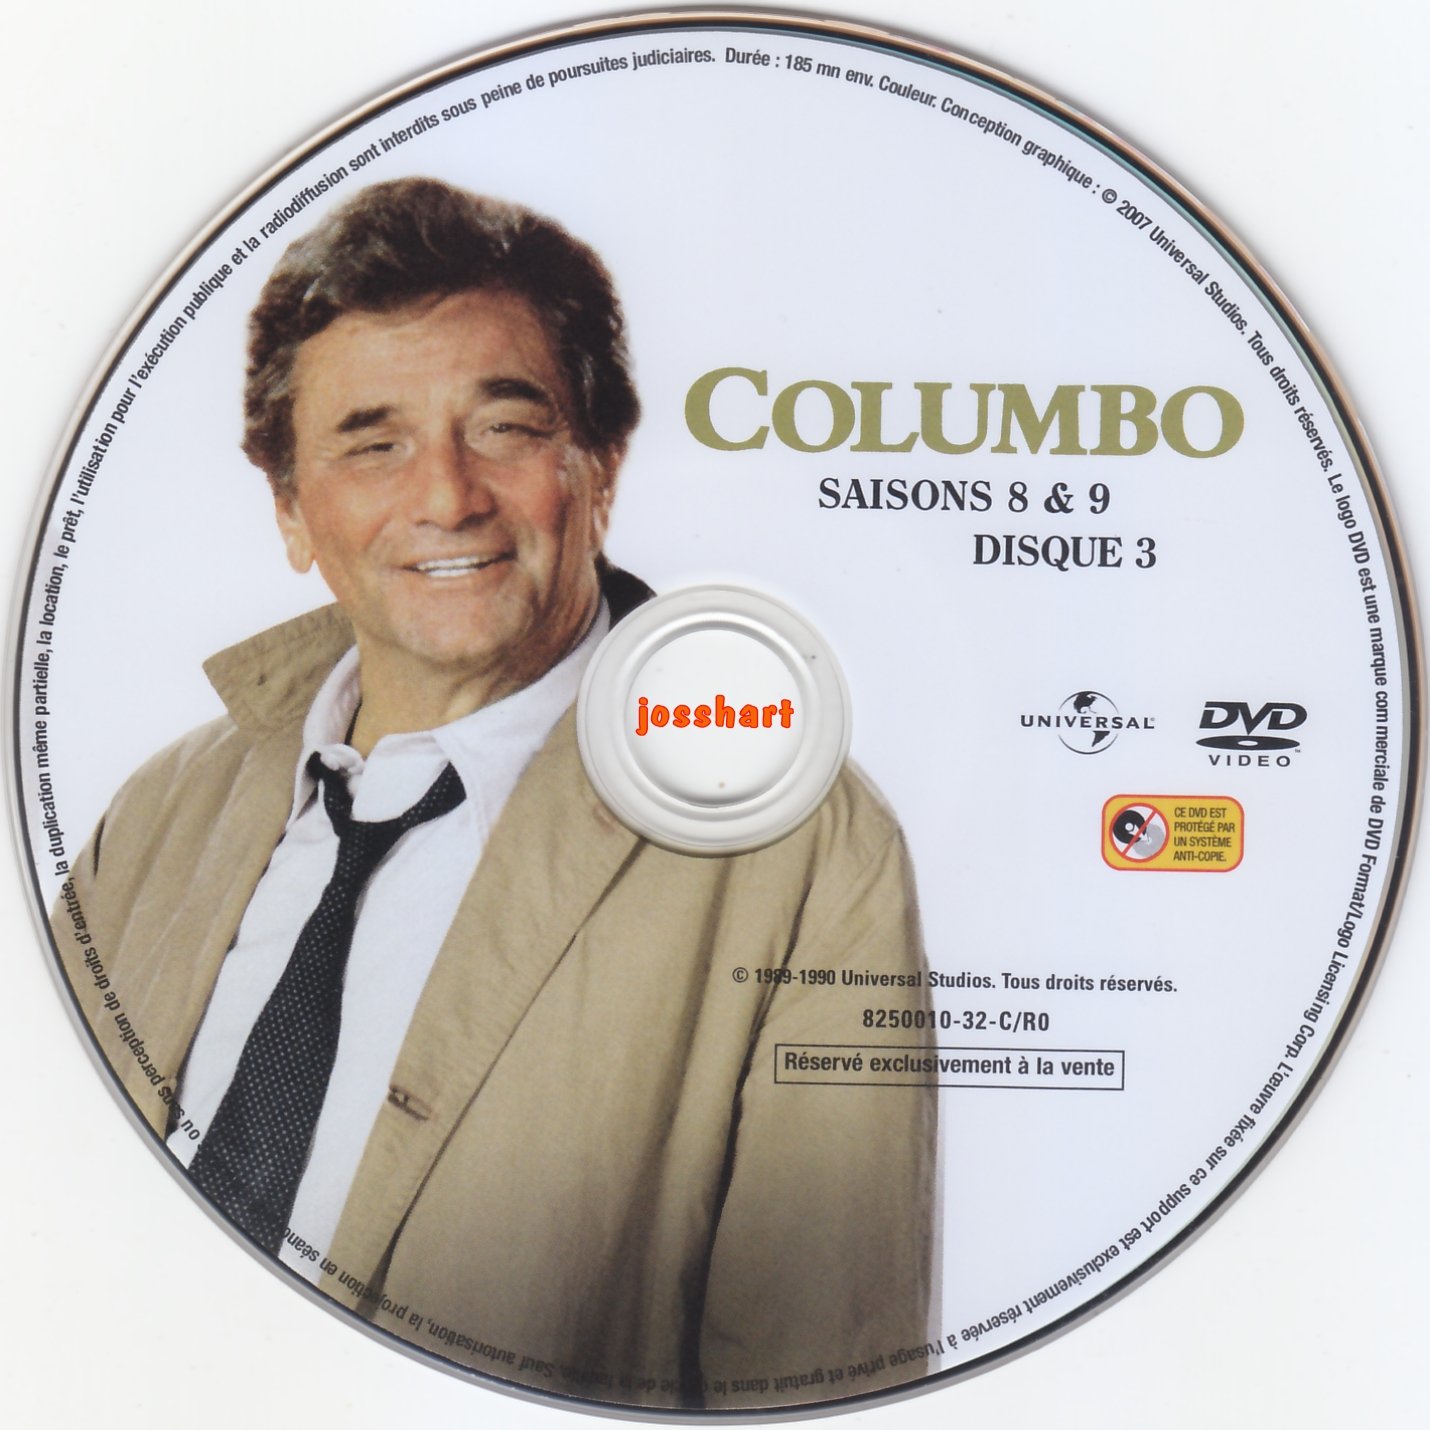 Columbo S8 et 9 DISC3